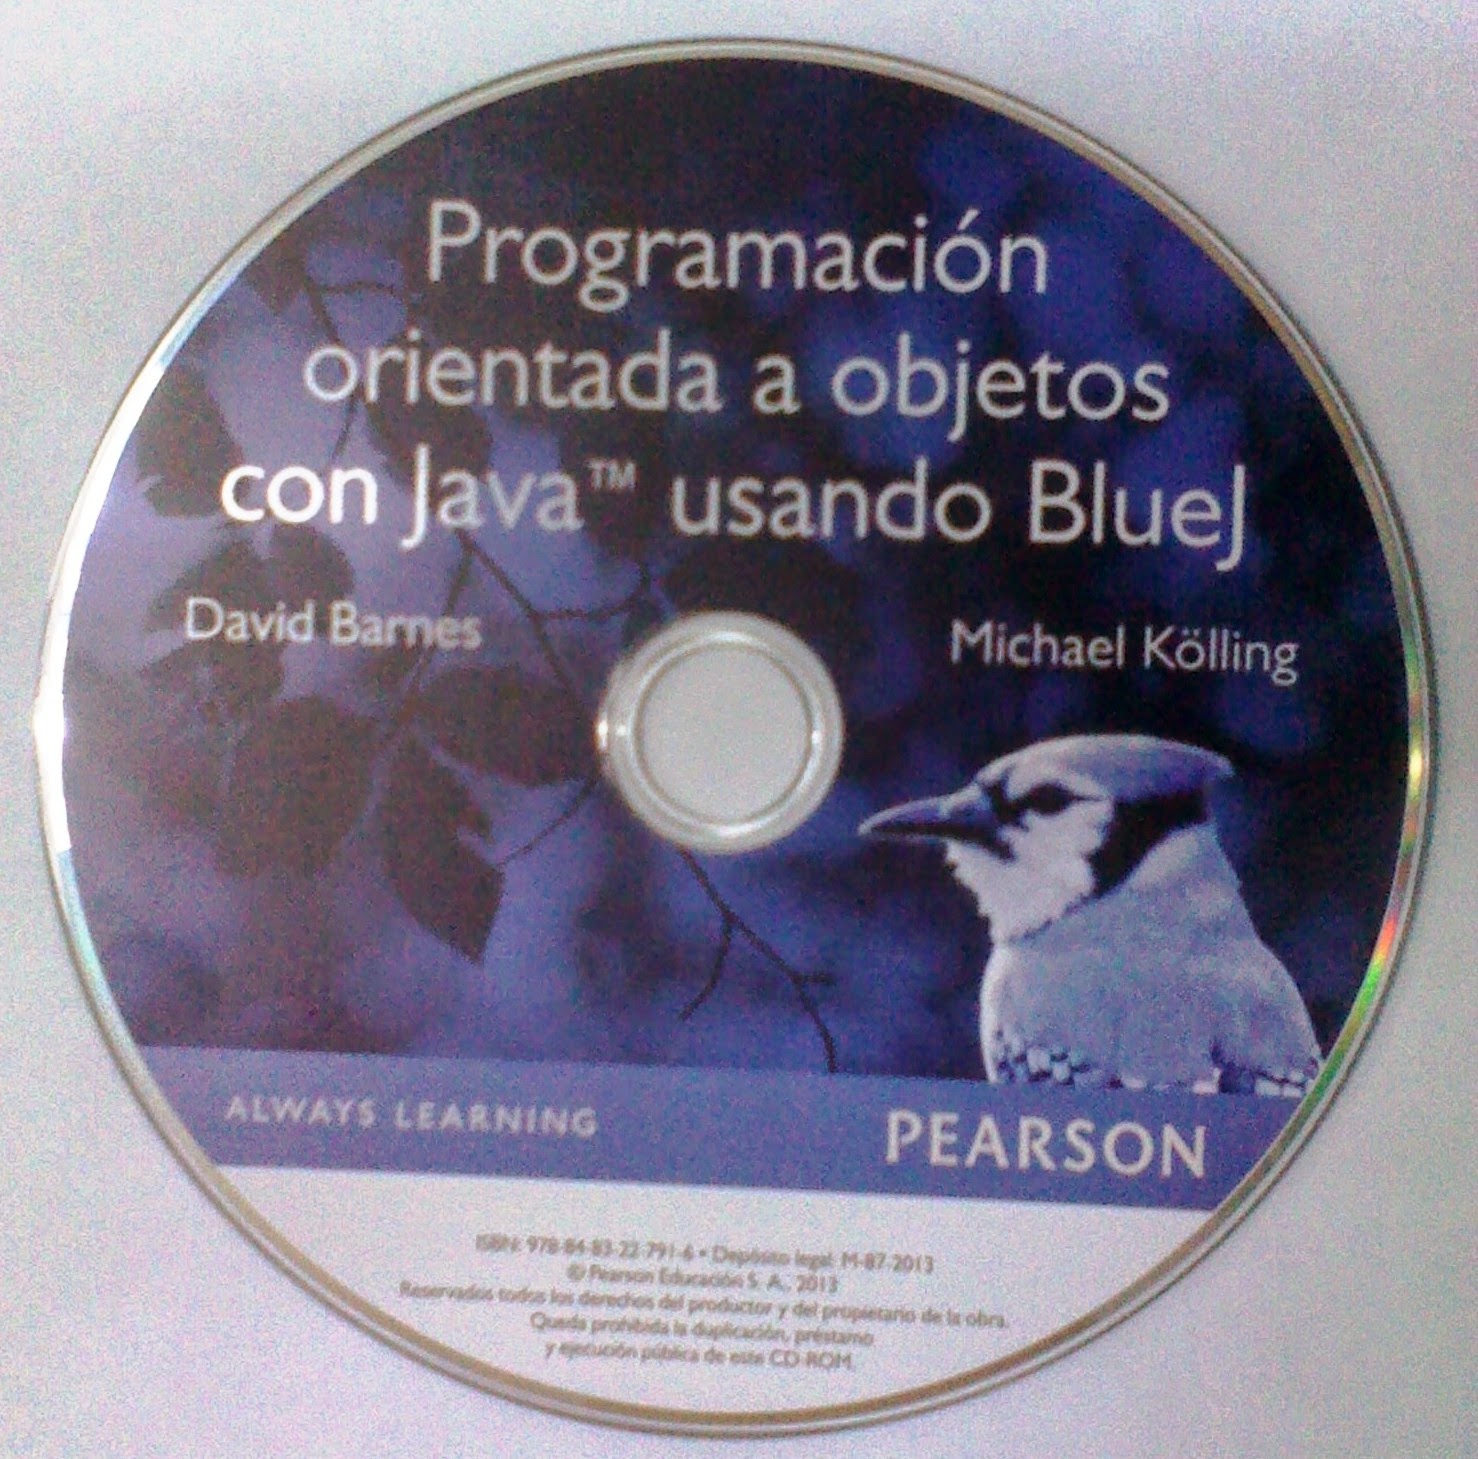 Programación orientada a objetos con Java usando Bluej